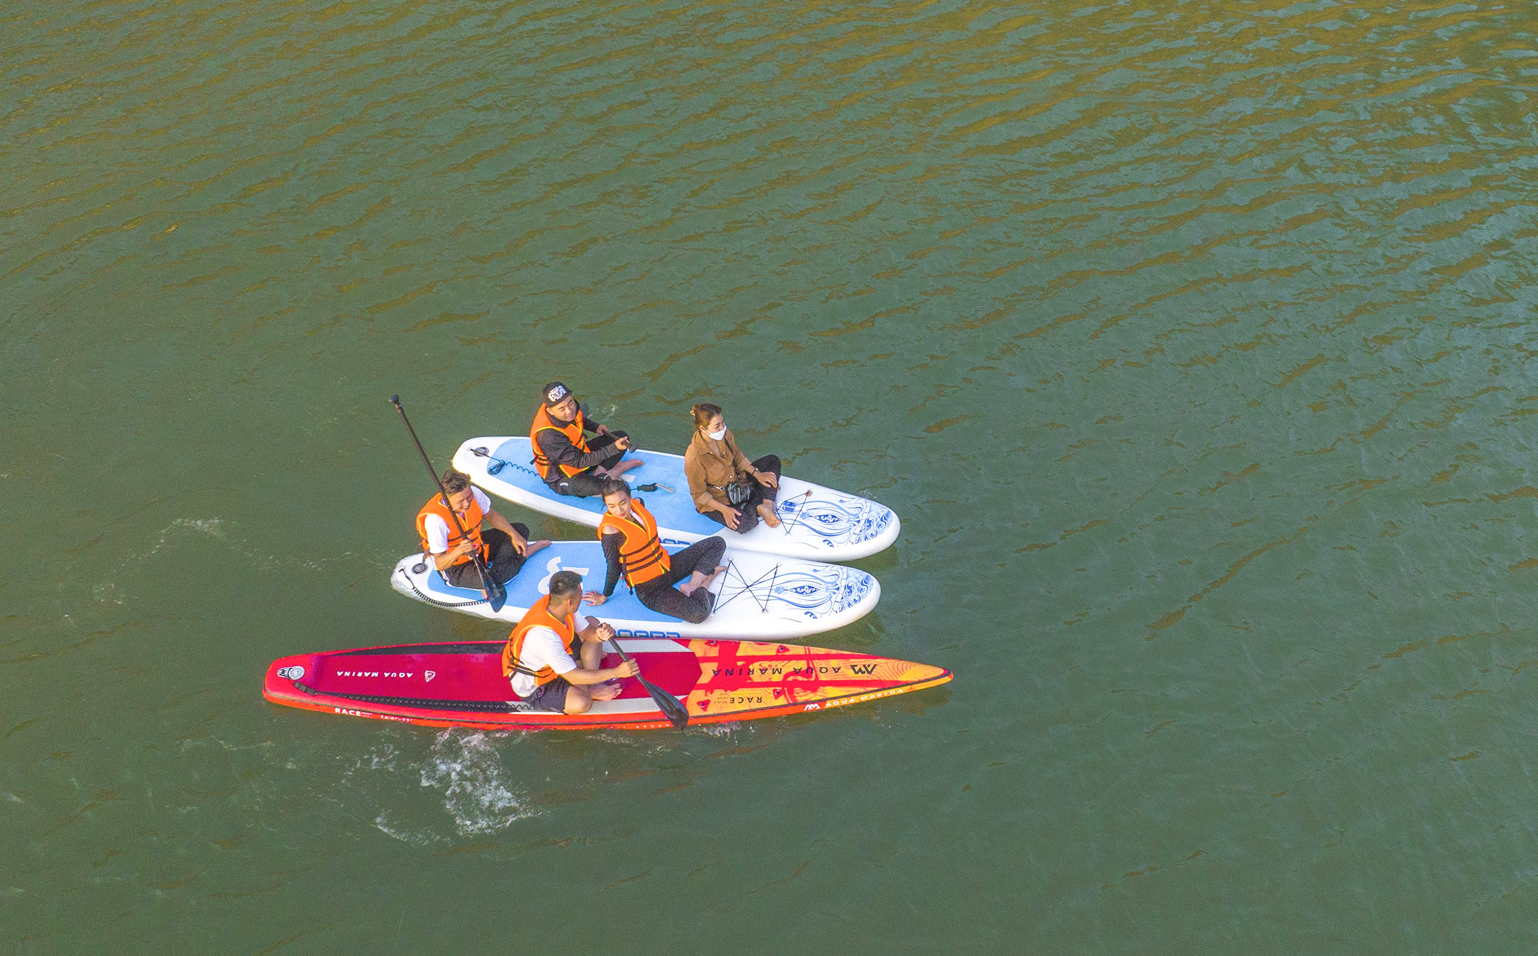 Chèo thuyền Kayak khám phá Vịnh Hạ Long